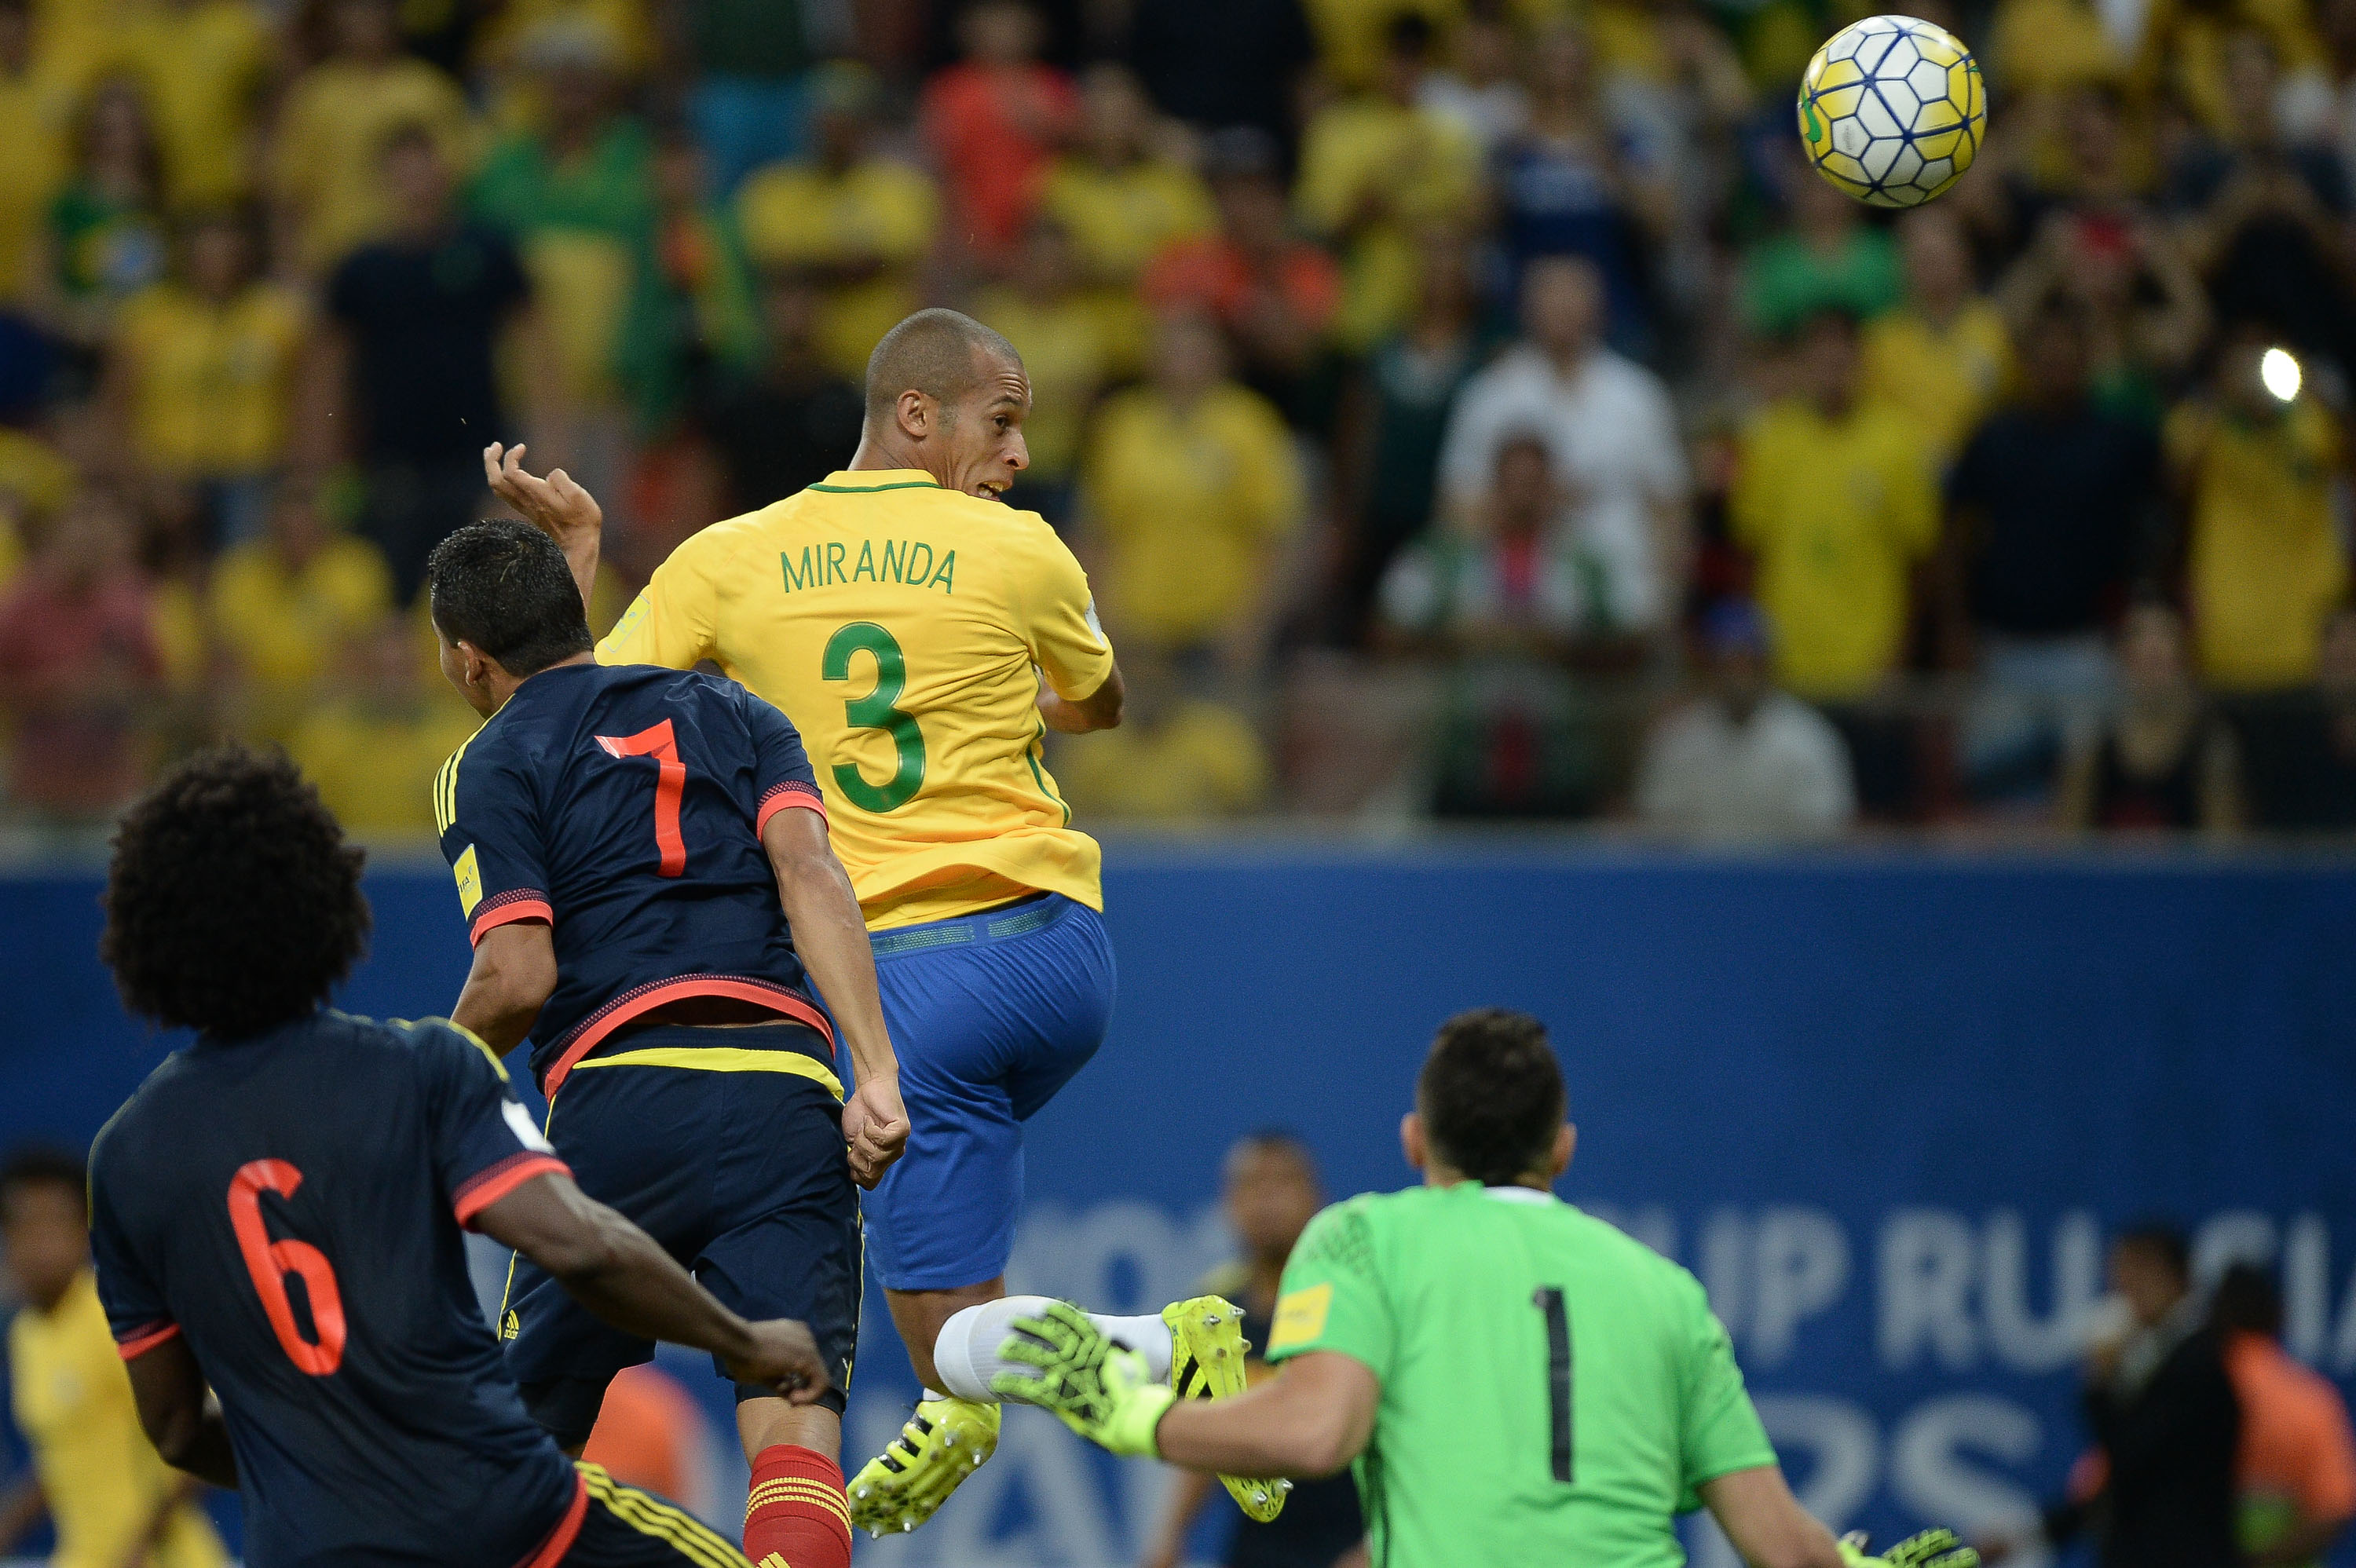 O paranaense Miranda marcou de cabeça logo no início do jogo. Foto: Pedro Martins/MoWA Press